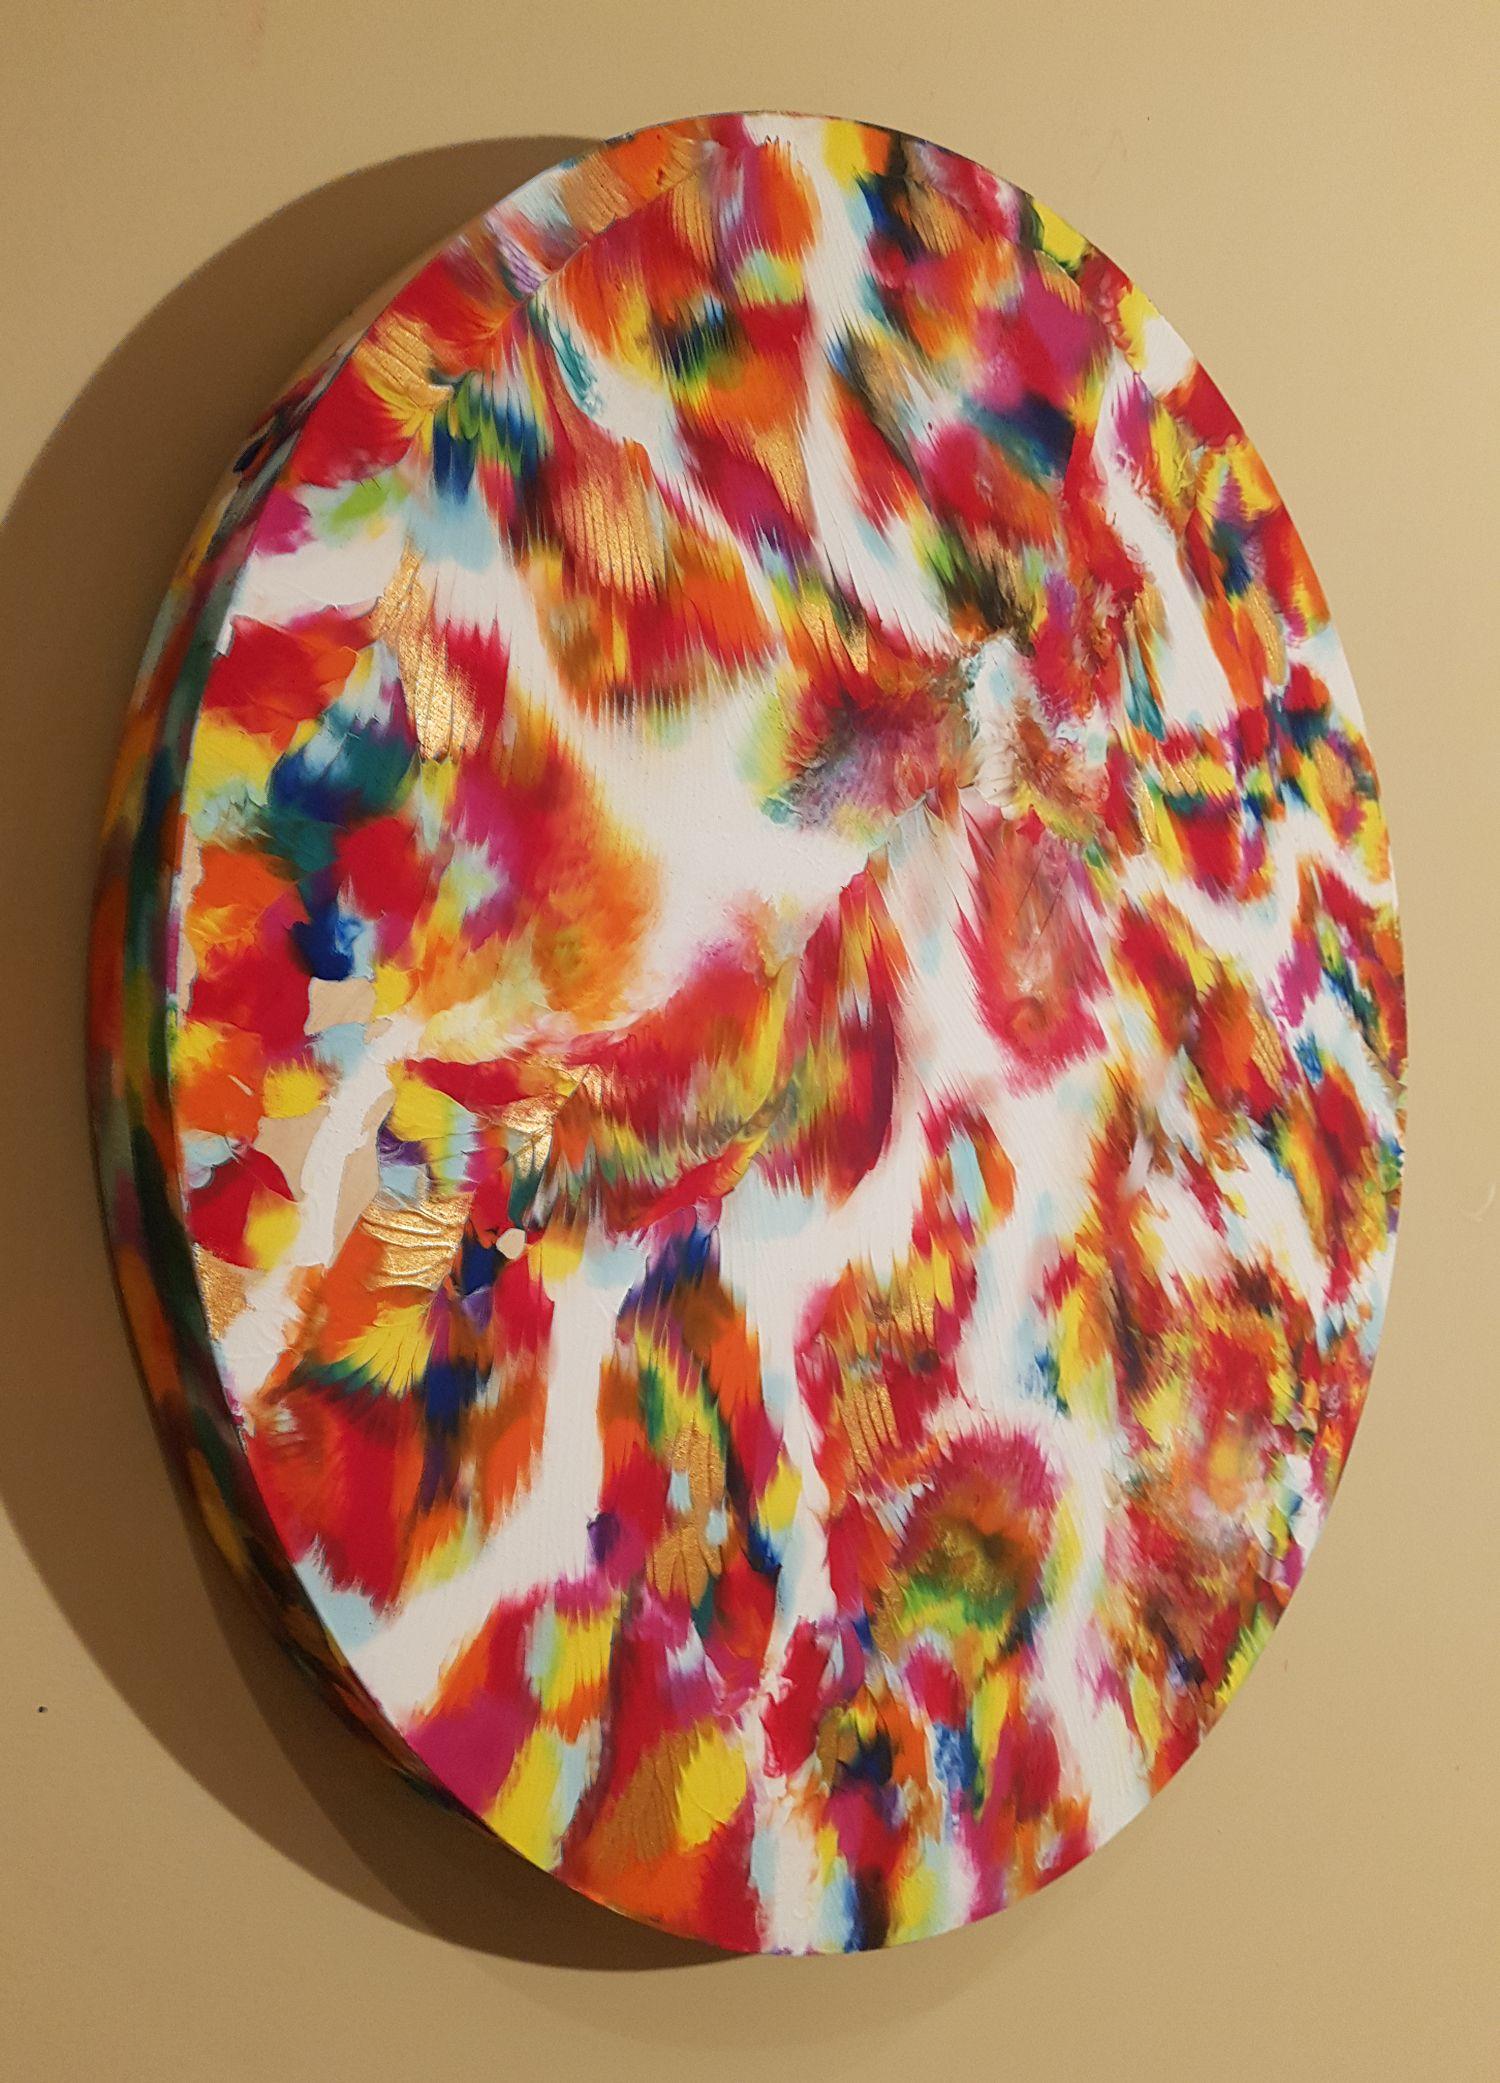 Volcanic Pulse ist ein einzigartiges abstraktes expressionistisches Gemälde mit kräftigen, warmen Farbtönen und einer metallischen Goldfarbe, die an verschiedenen Stellen mit einer einzigartigen, geäderten 